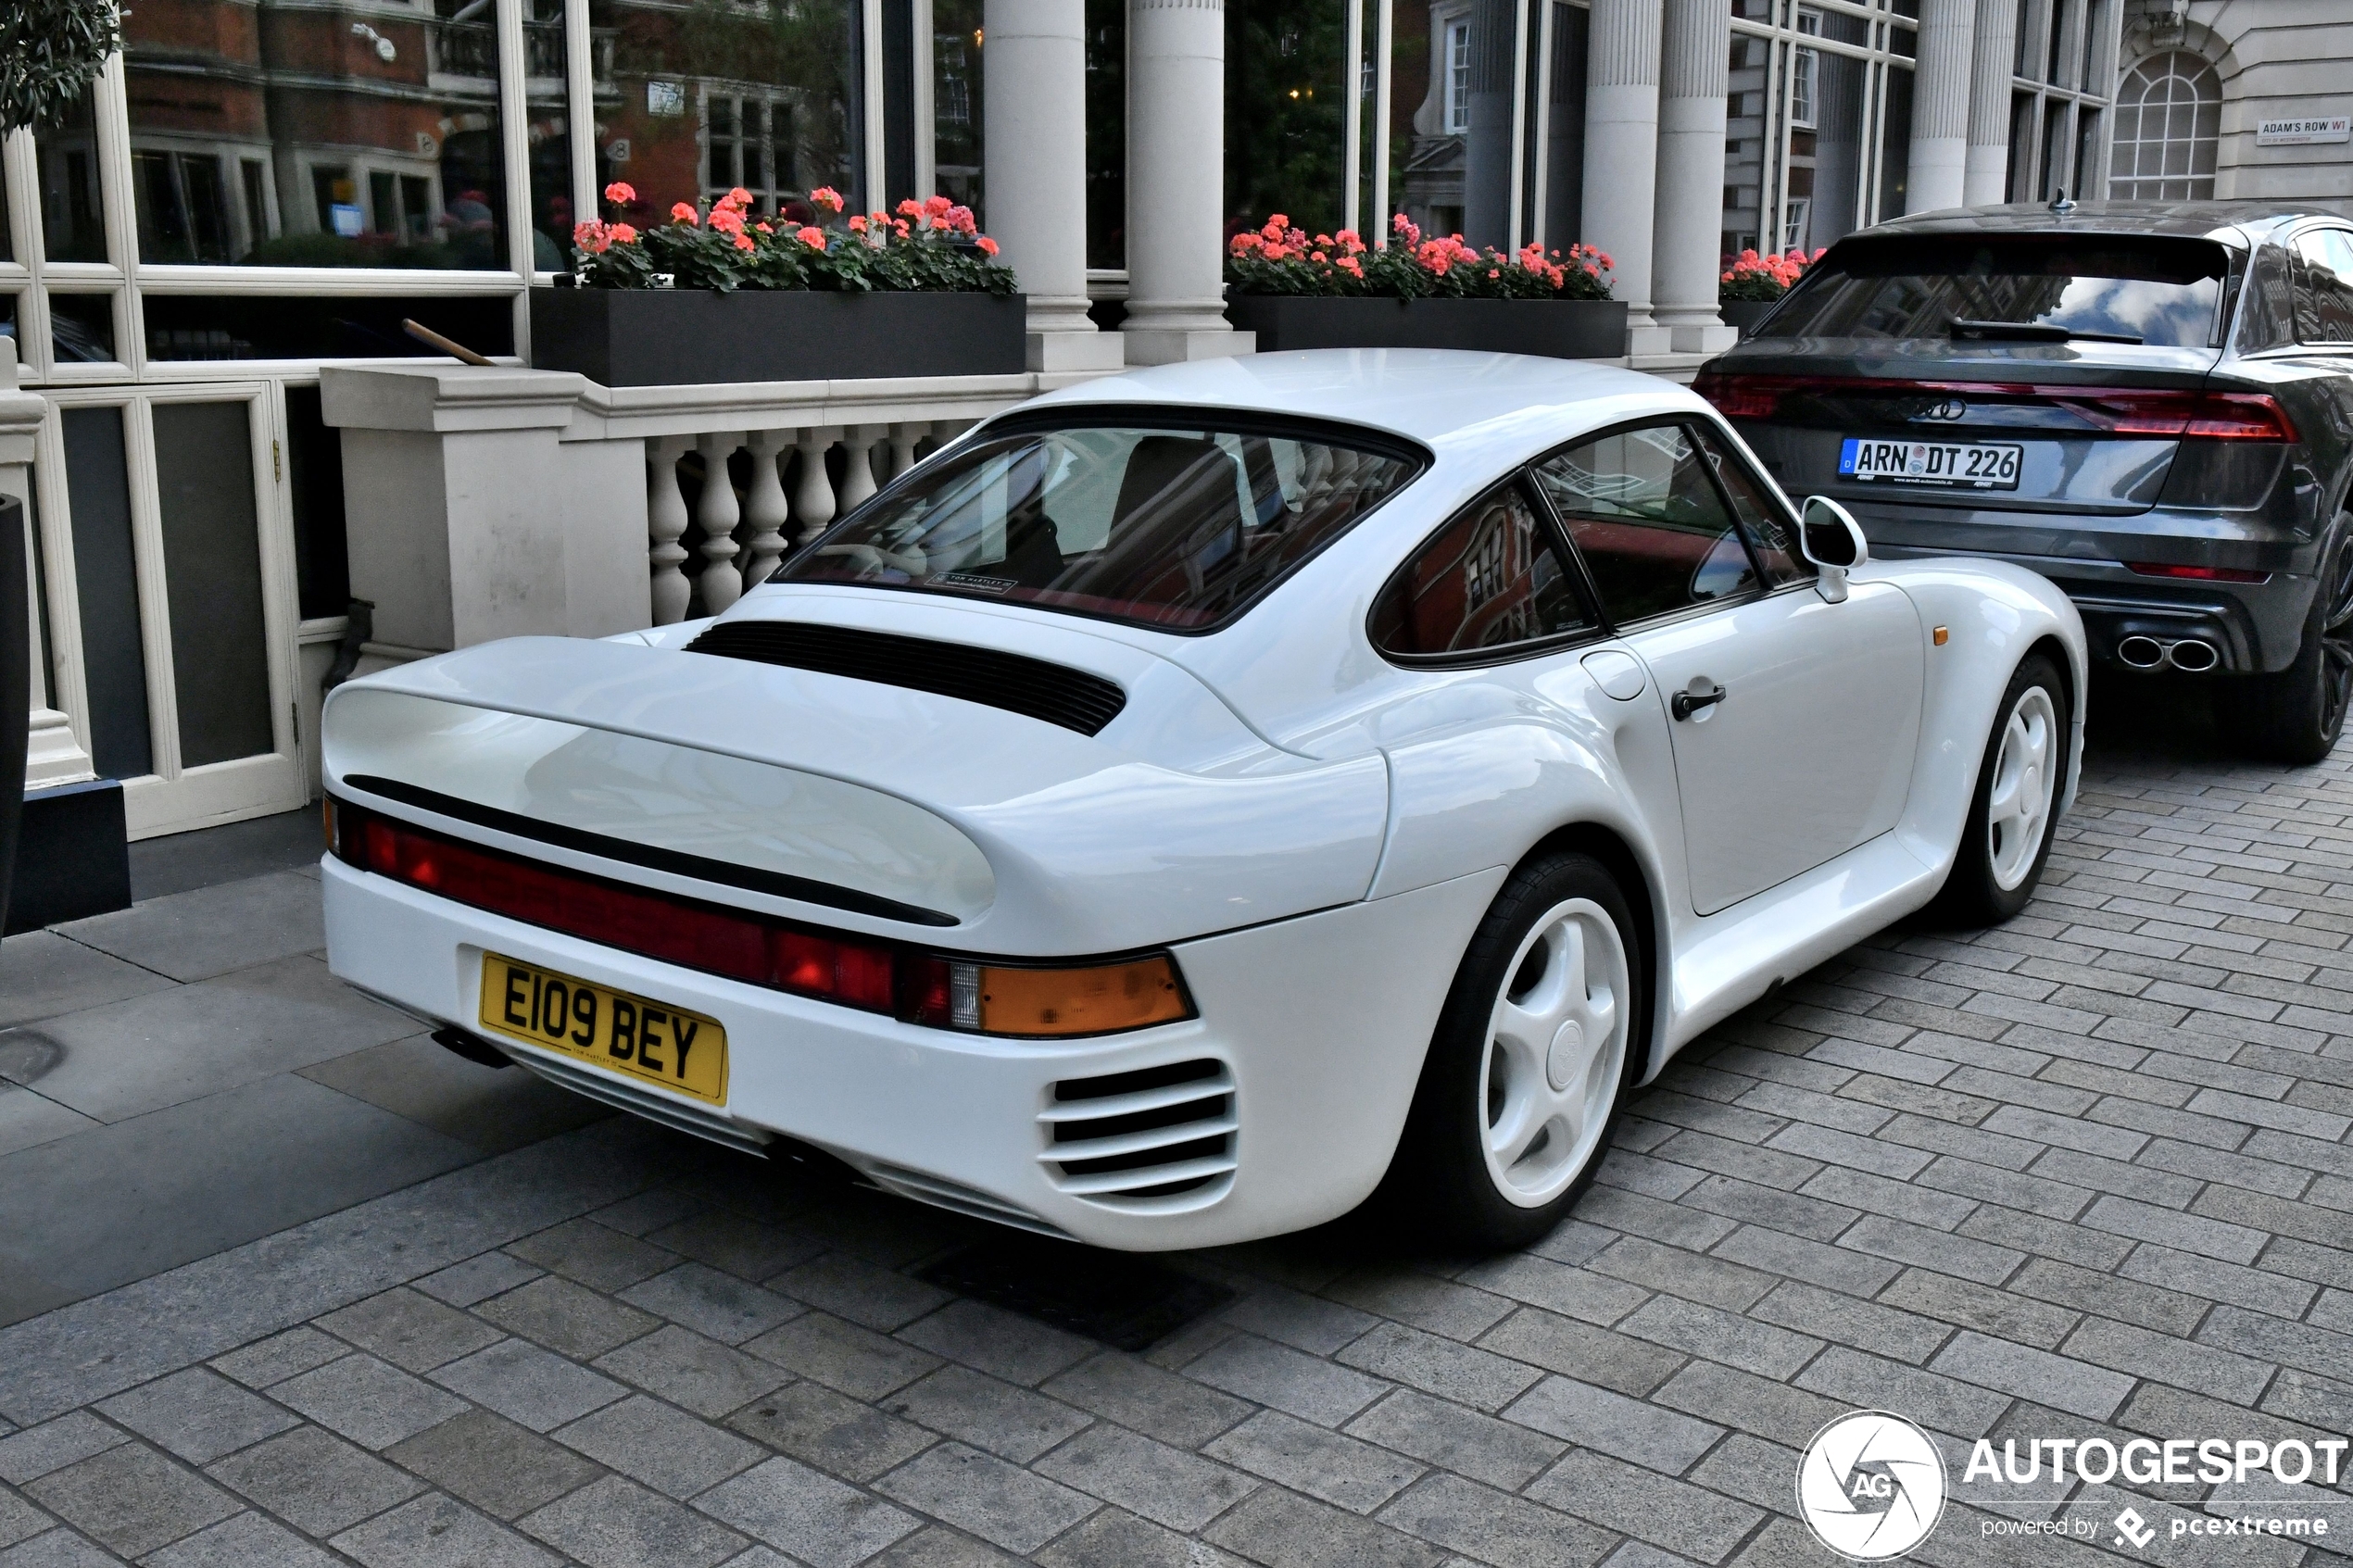 Porsche 959 is de baas in Londen